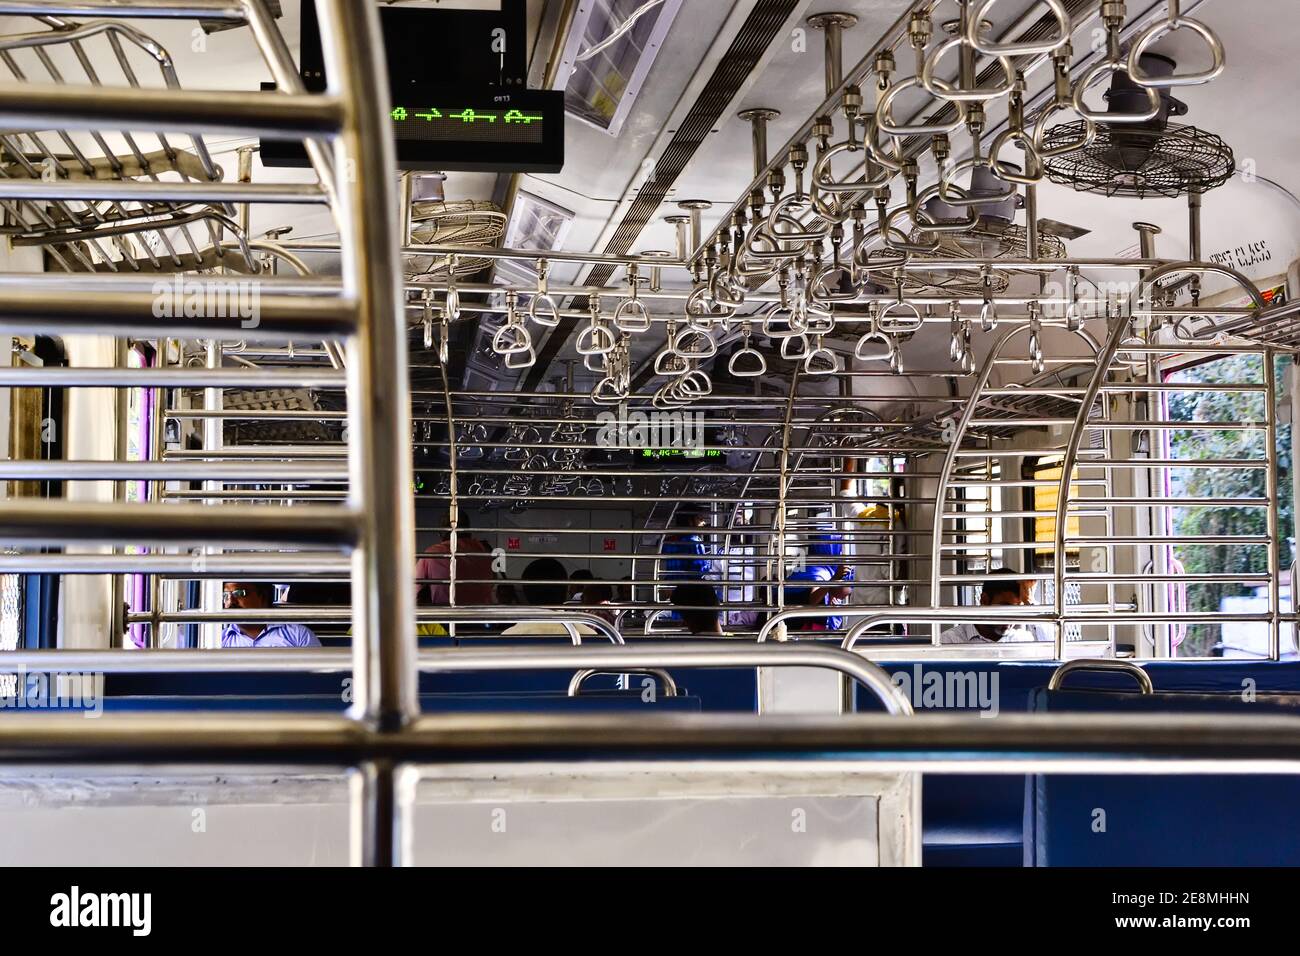 Mumbai, Maharashtra, India - Dicembre, 2016: Interno del treno urbano locale. File di corrimano in acciaio all'interno pullman vuoto con ventilatori di treno locale. Foto Stock